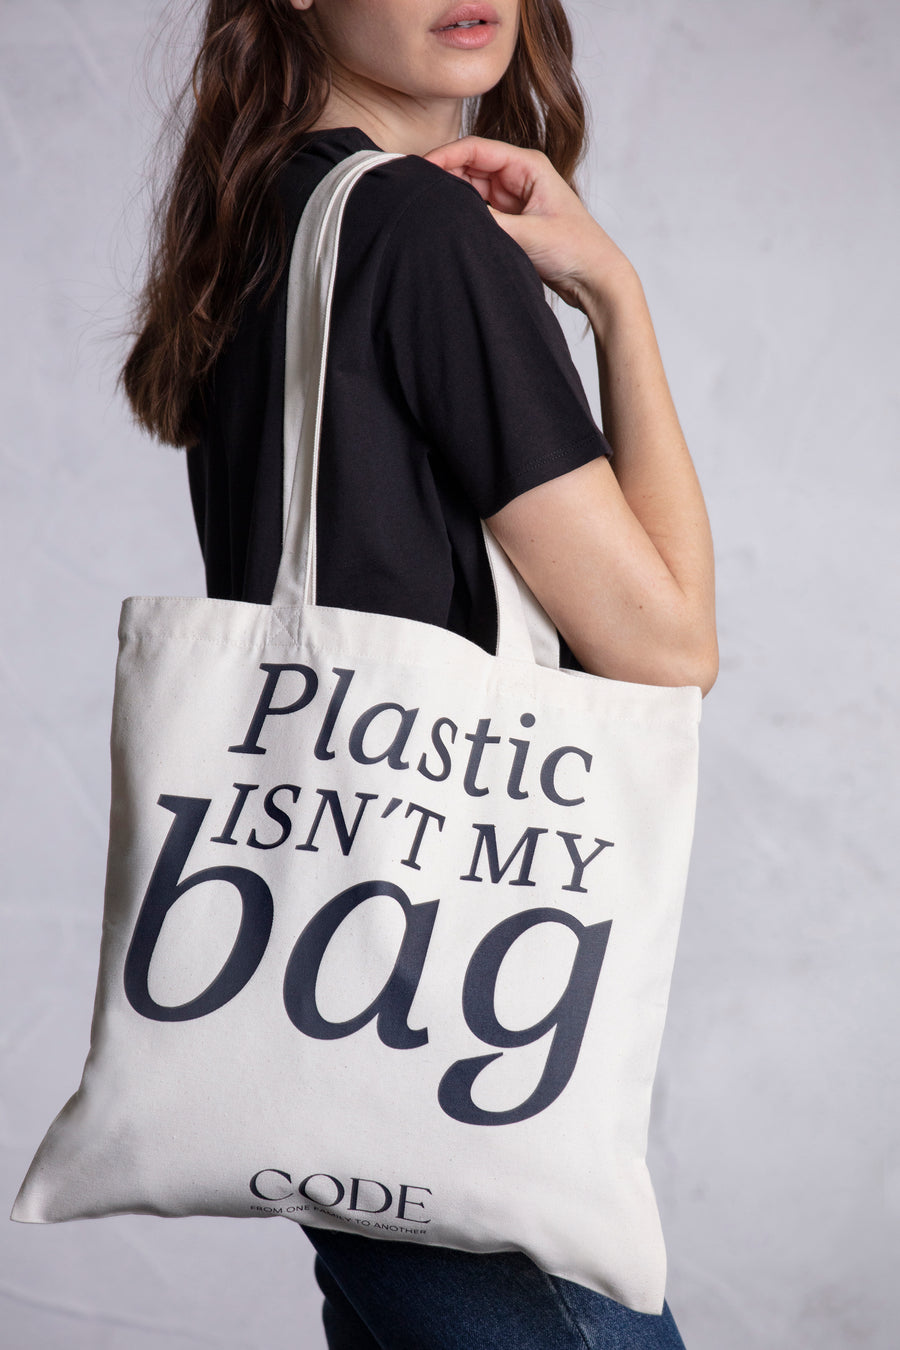 Tote bag alusiva ao mês da sustentabilidade com alças de ombro.